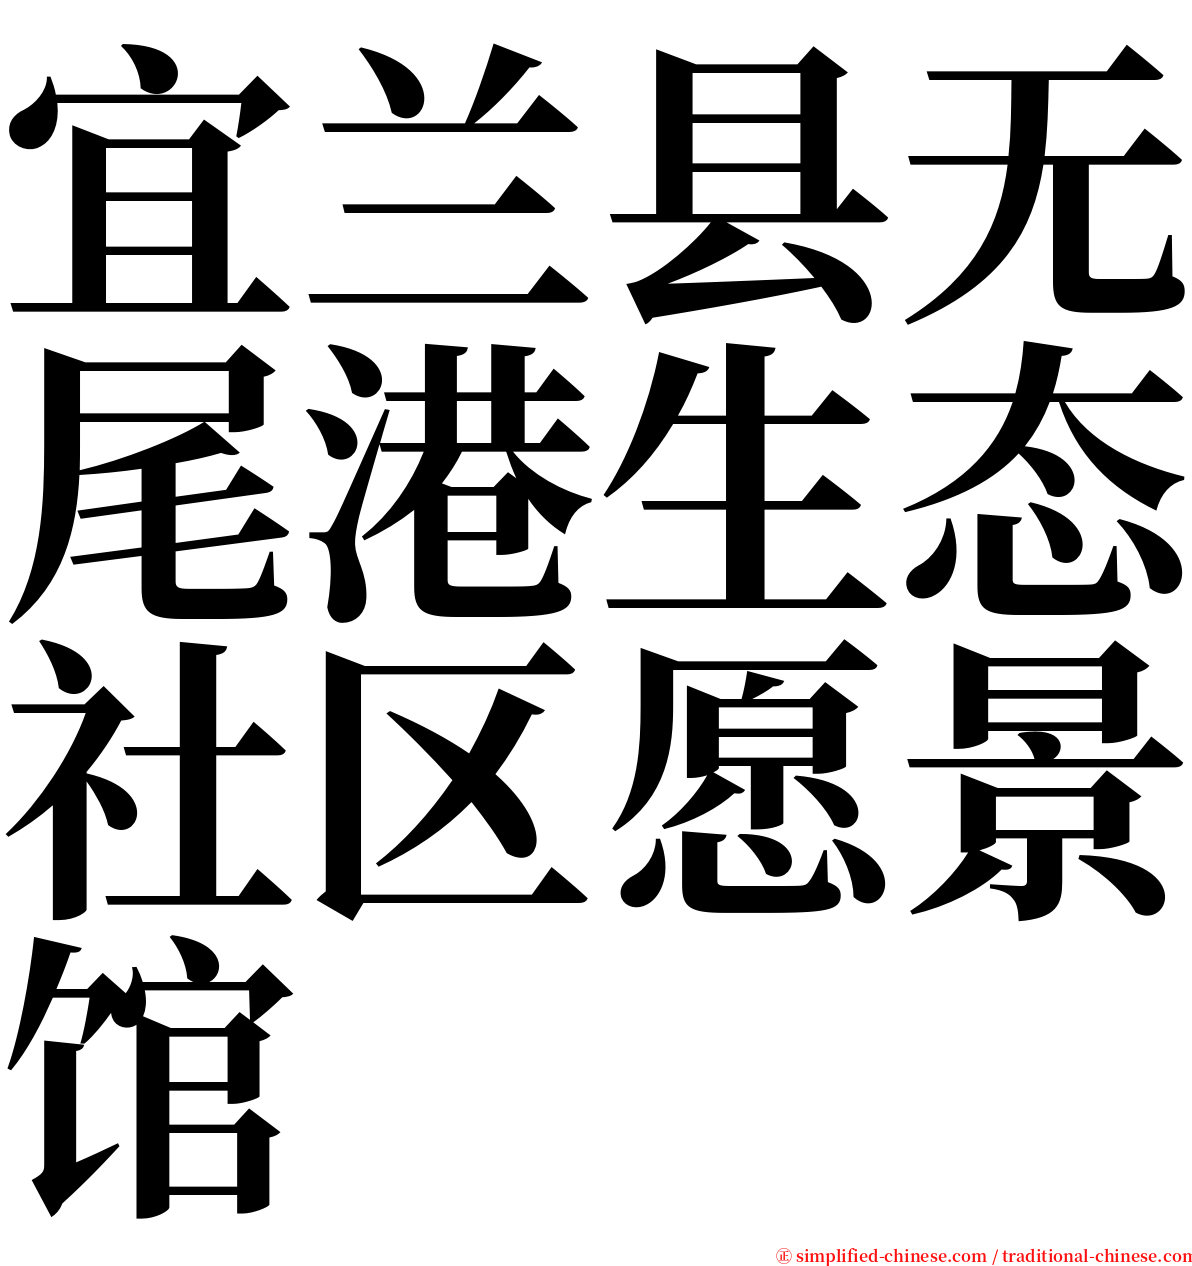 宜兰县无尾港生态社区愿景馆 serif font